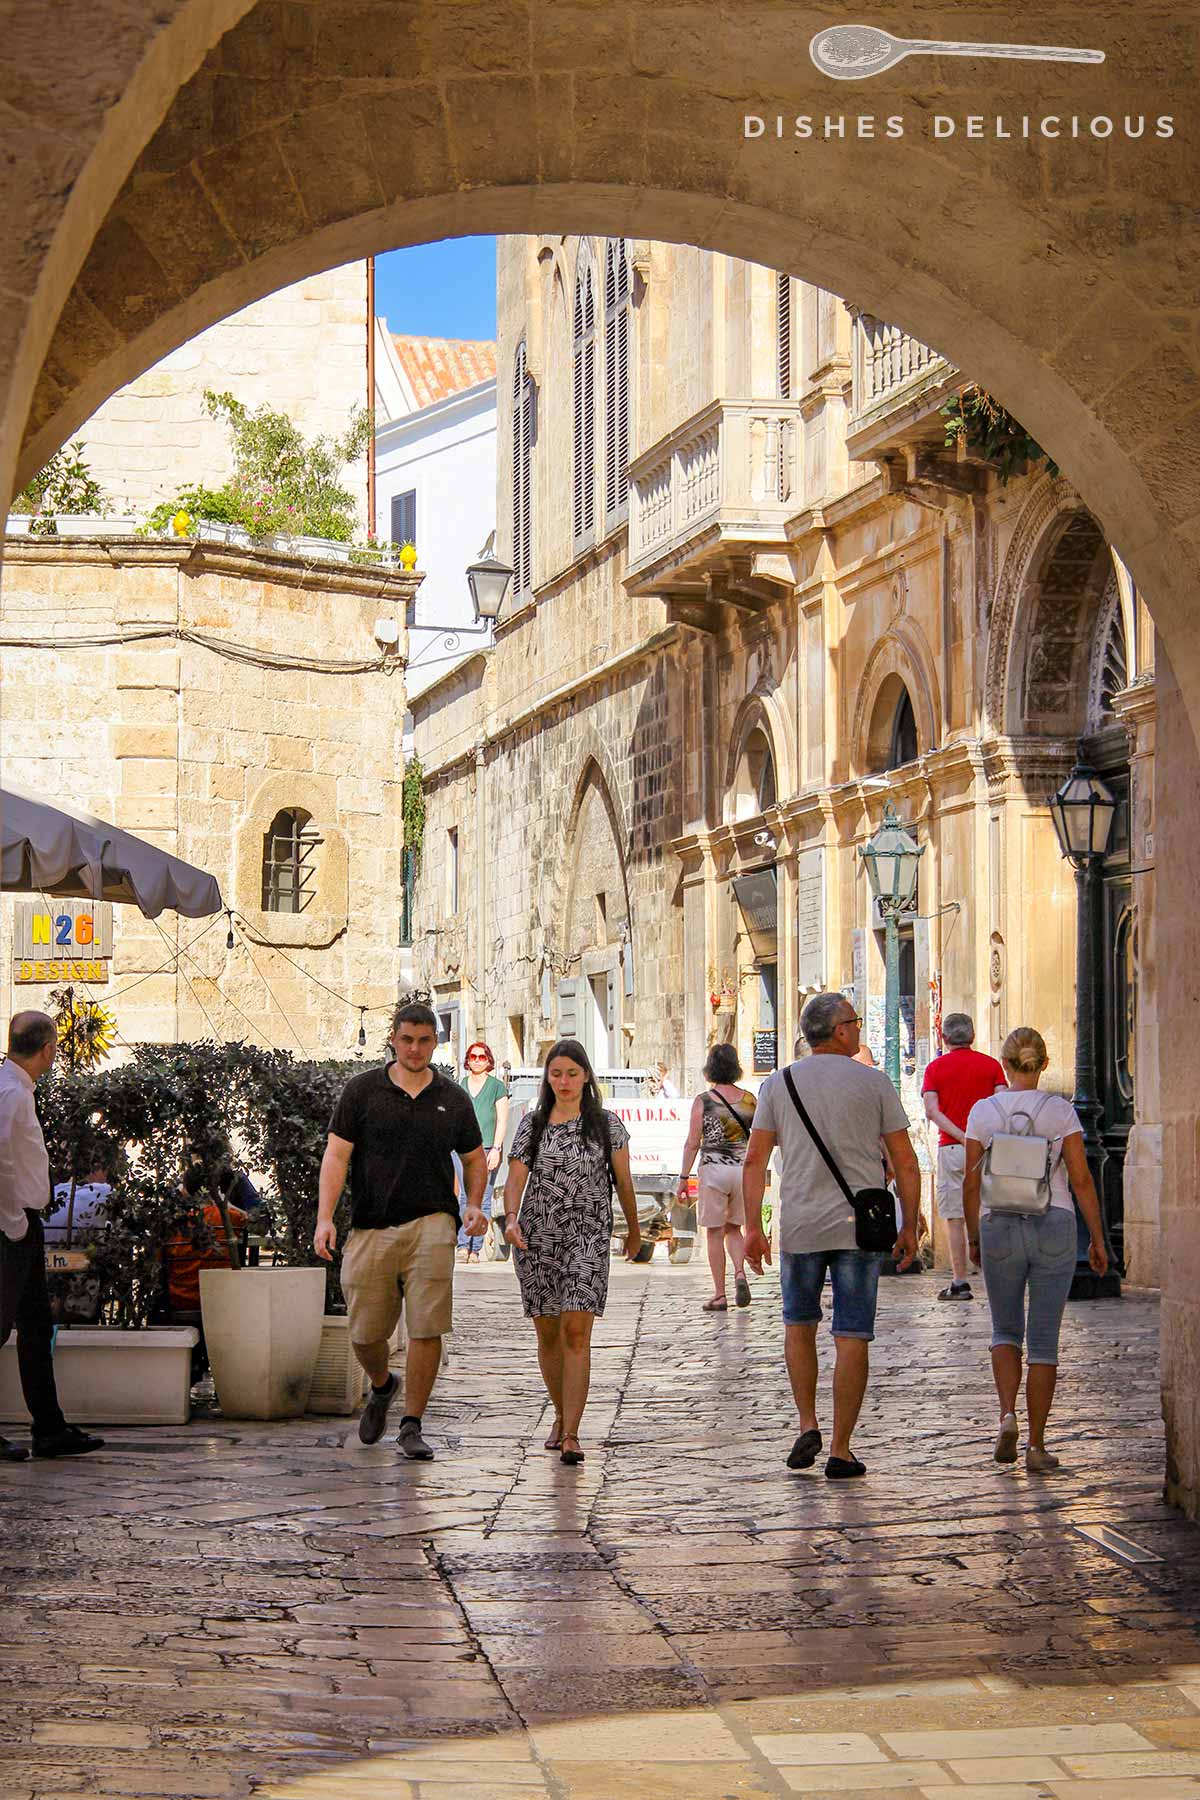 Stadttor zur Altstadt von Polignano a Mare, Menschen laufen eine Gasse entlang.